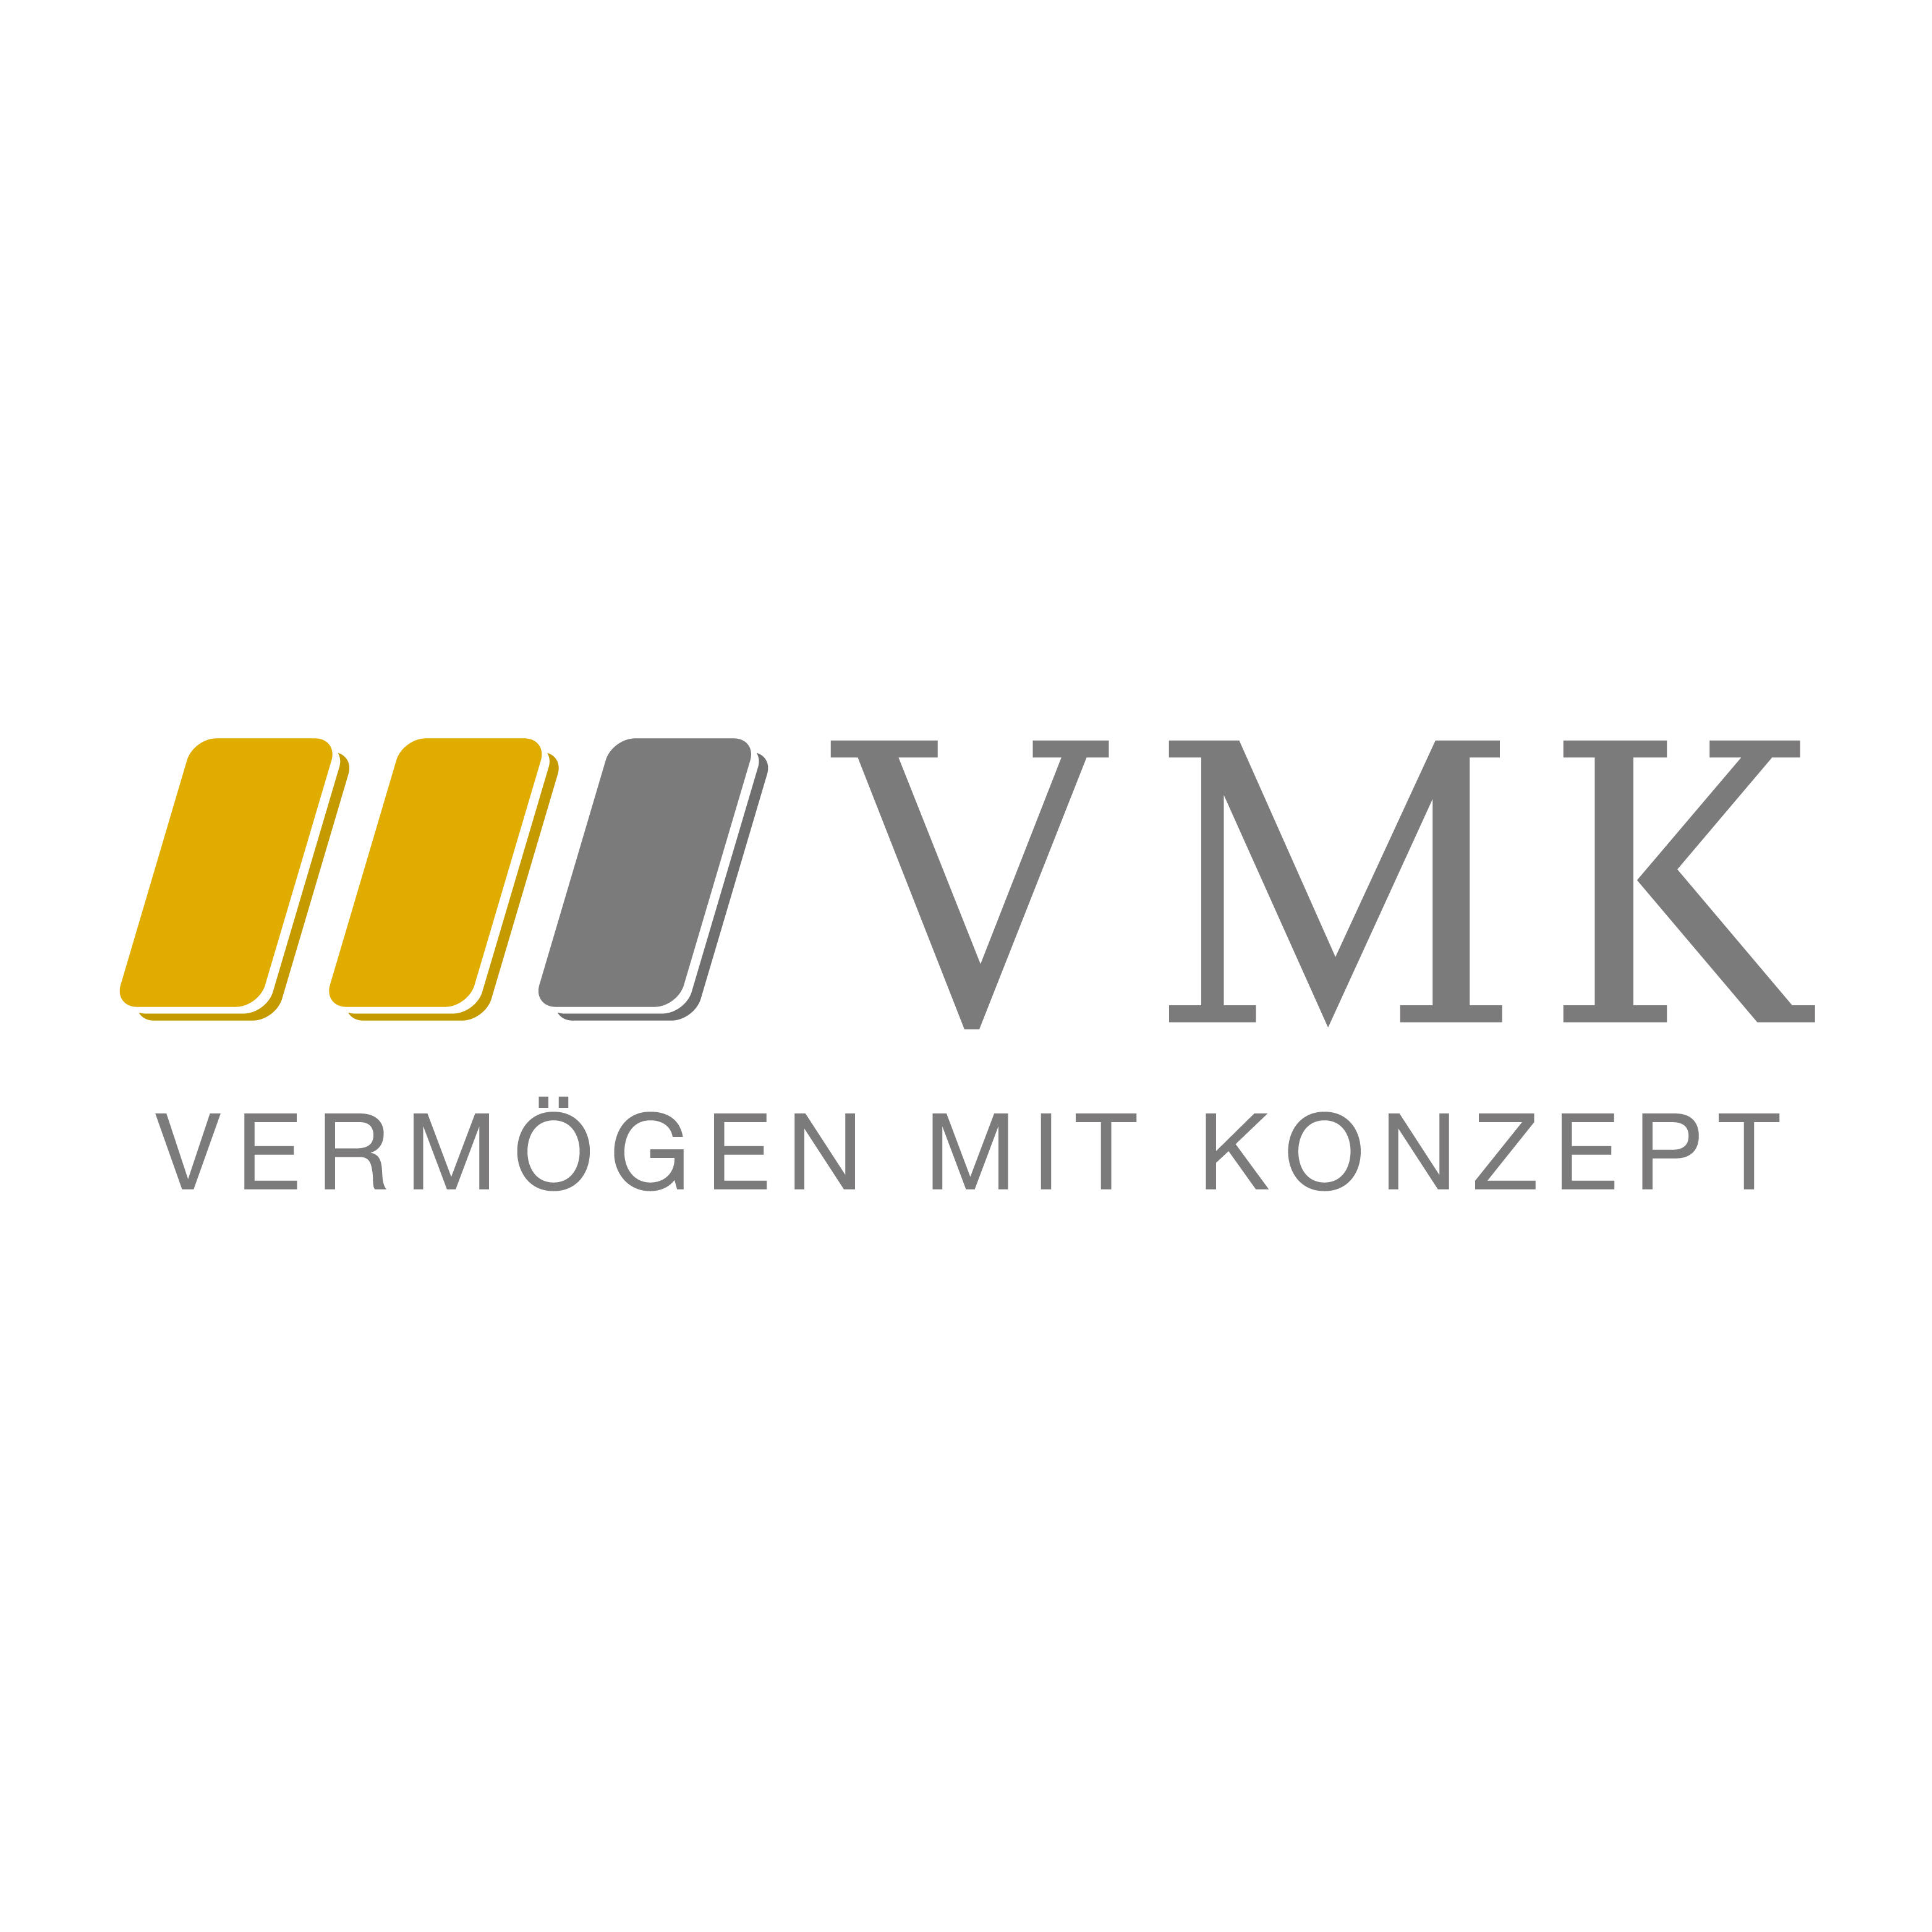 VMK Vermögen mit Konzept GmbH & Co. KG Logo